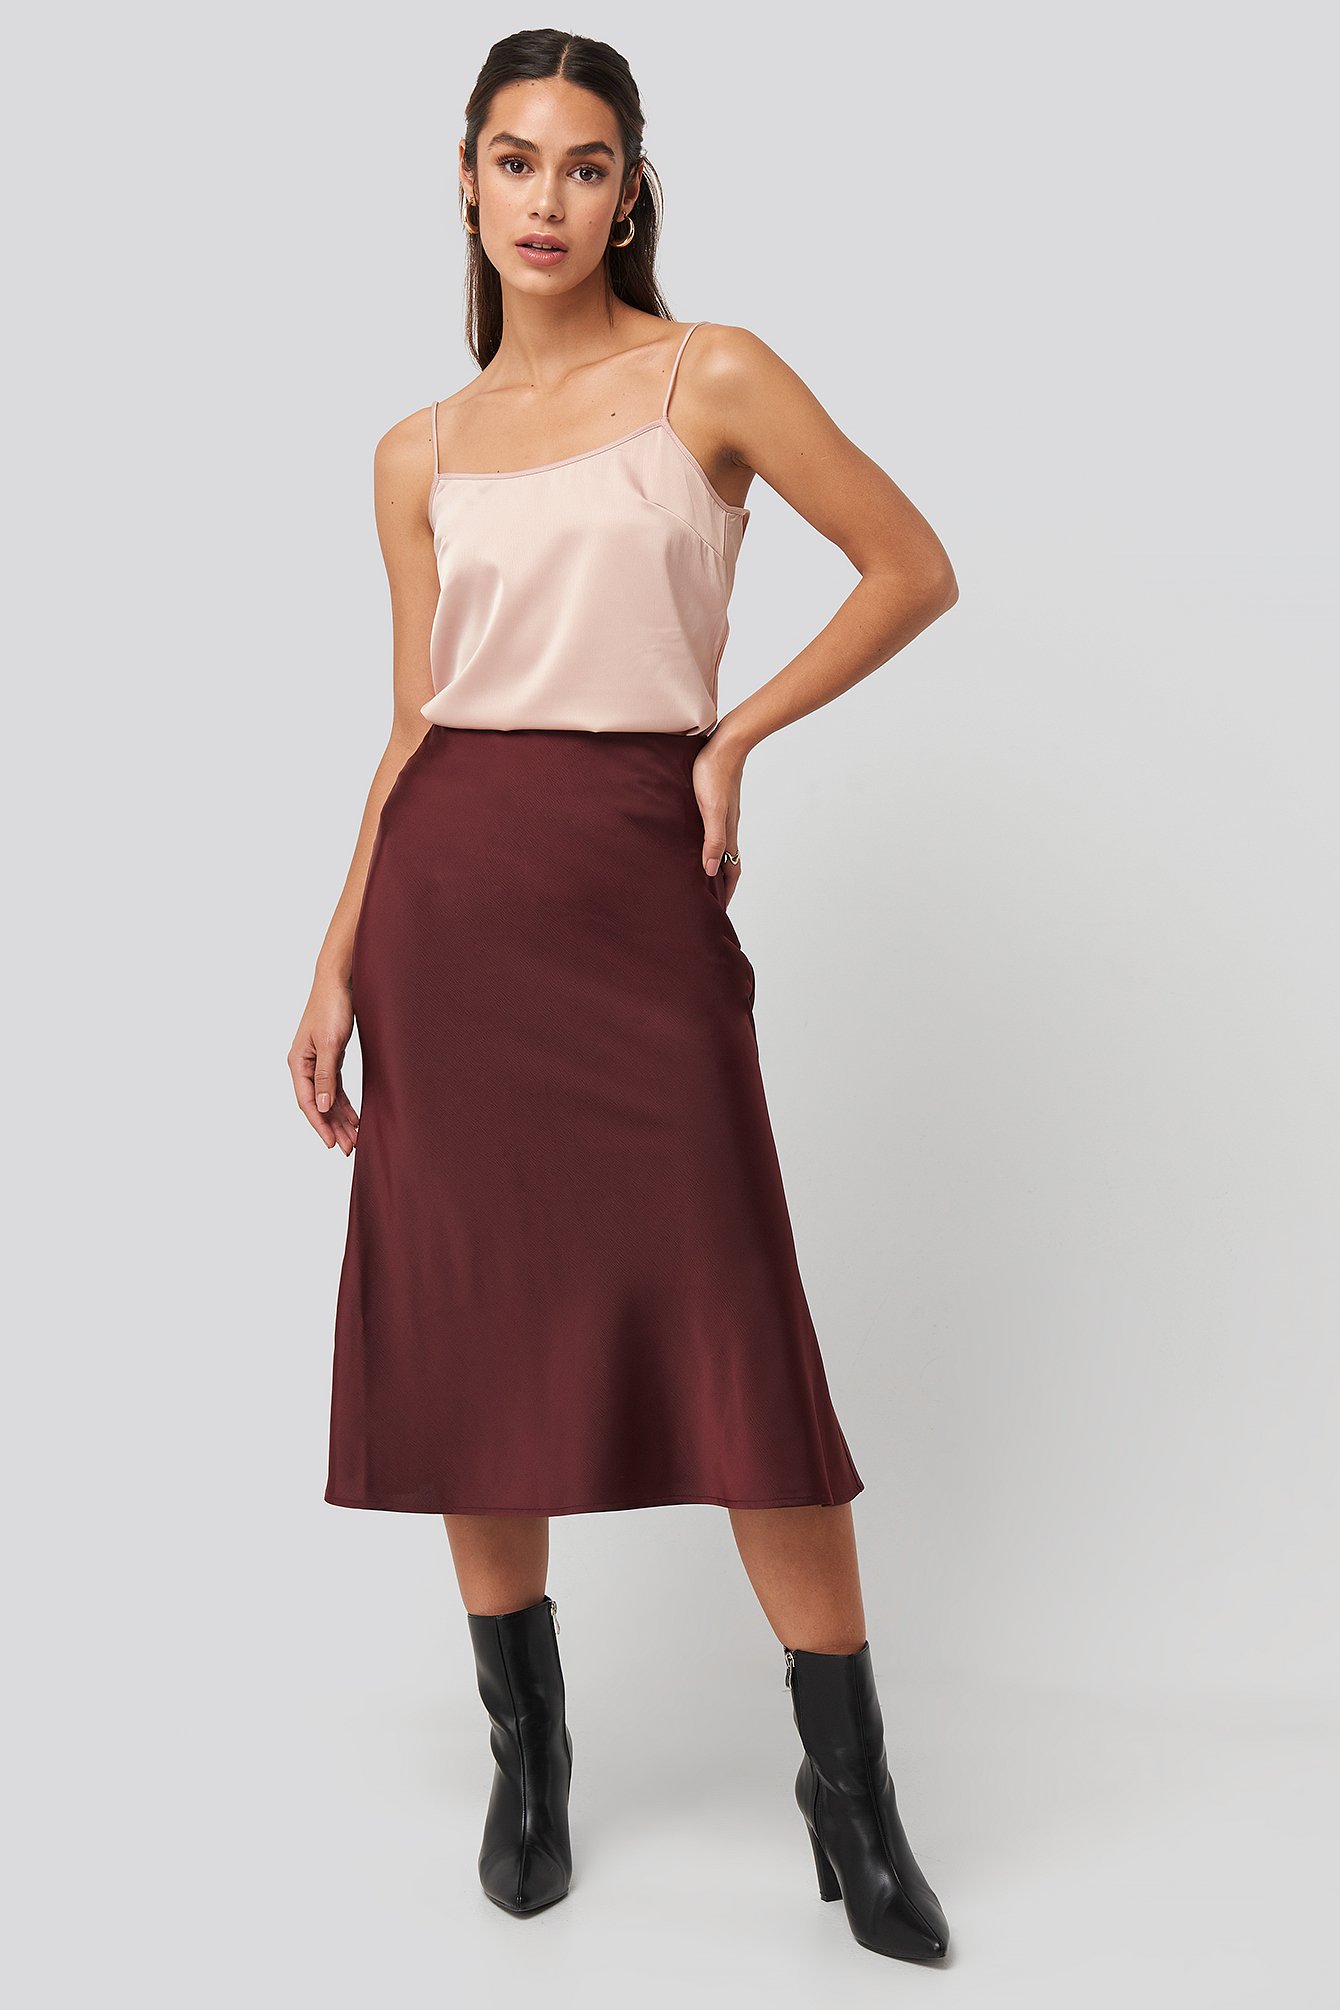 Burgundy Satin Skirt